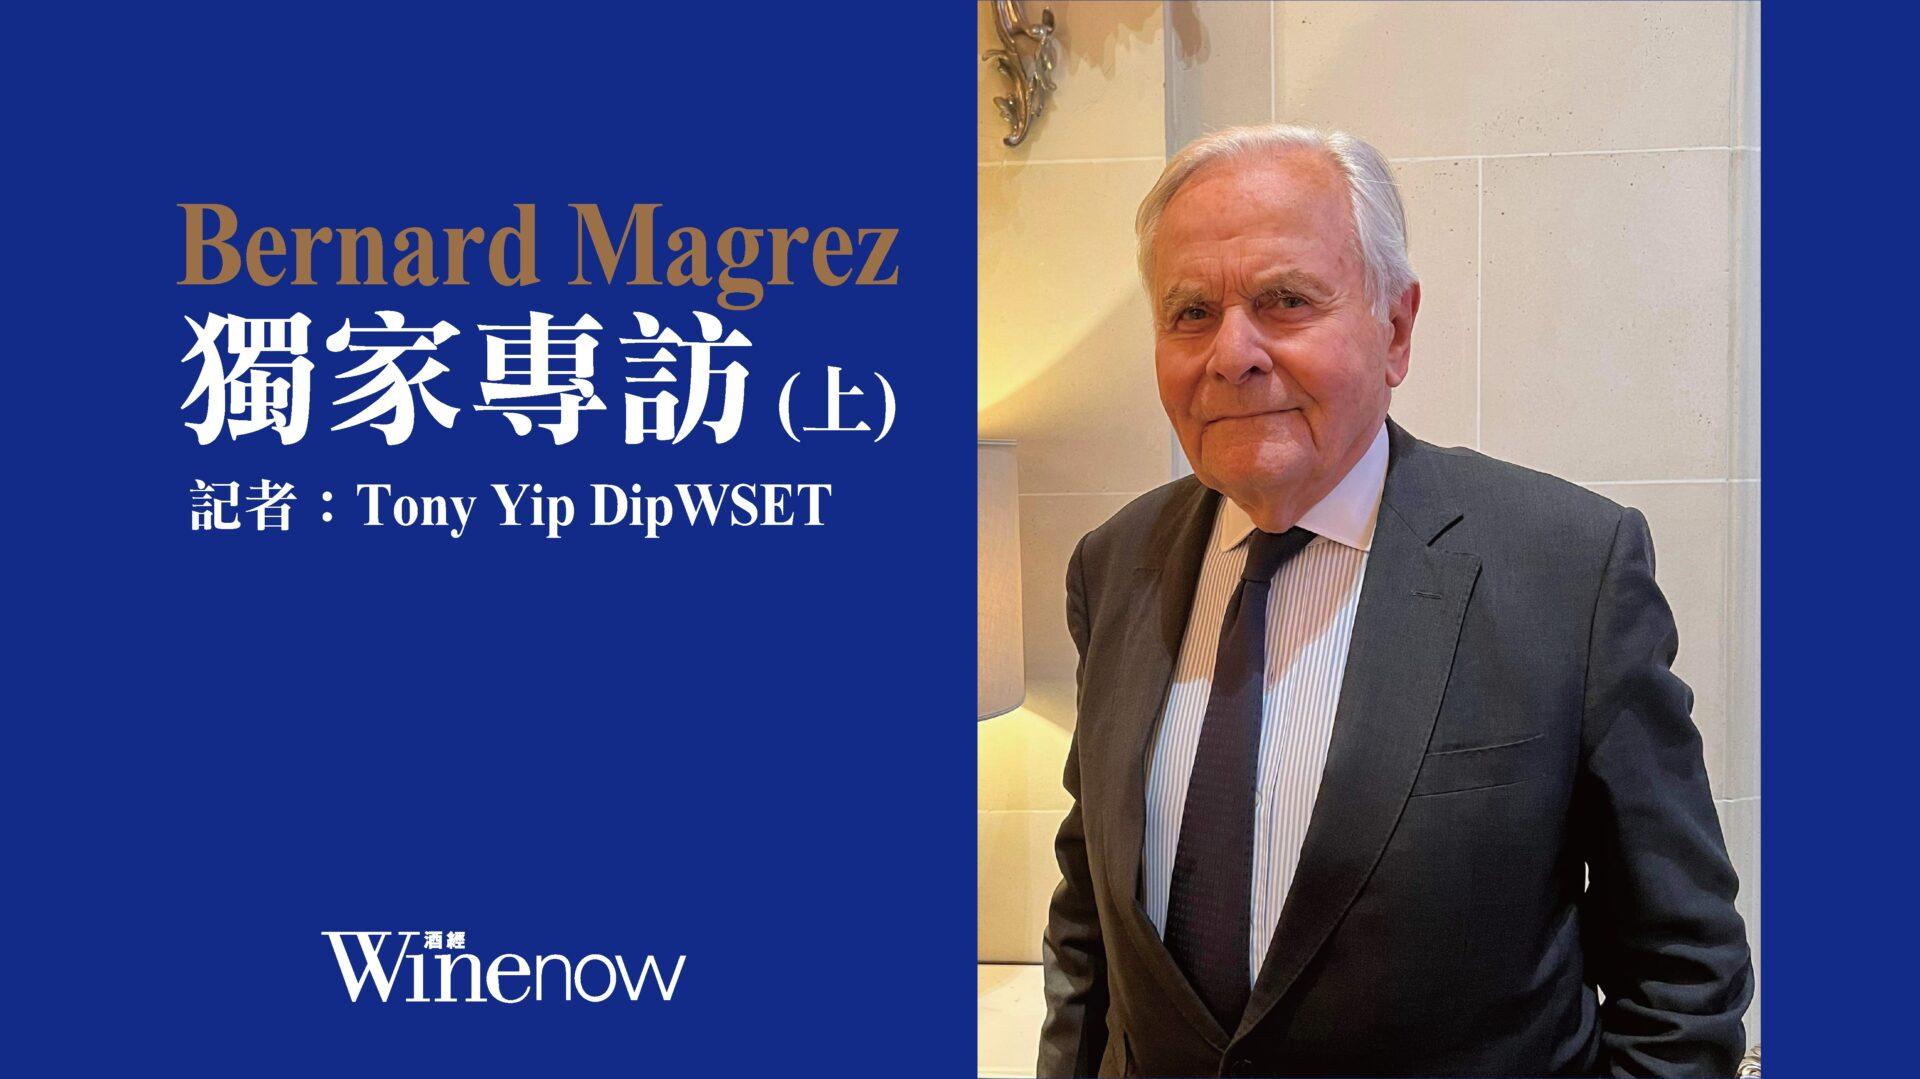 獨家專訪「雙金匙」酒業大亨 Bernard Magrez (上) - WineNow HK